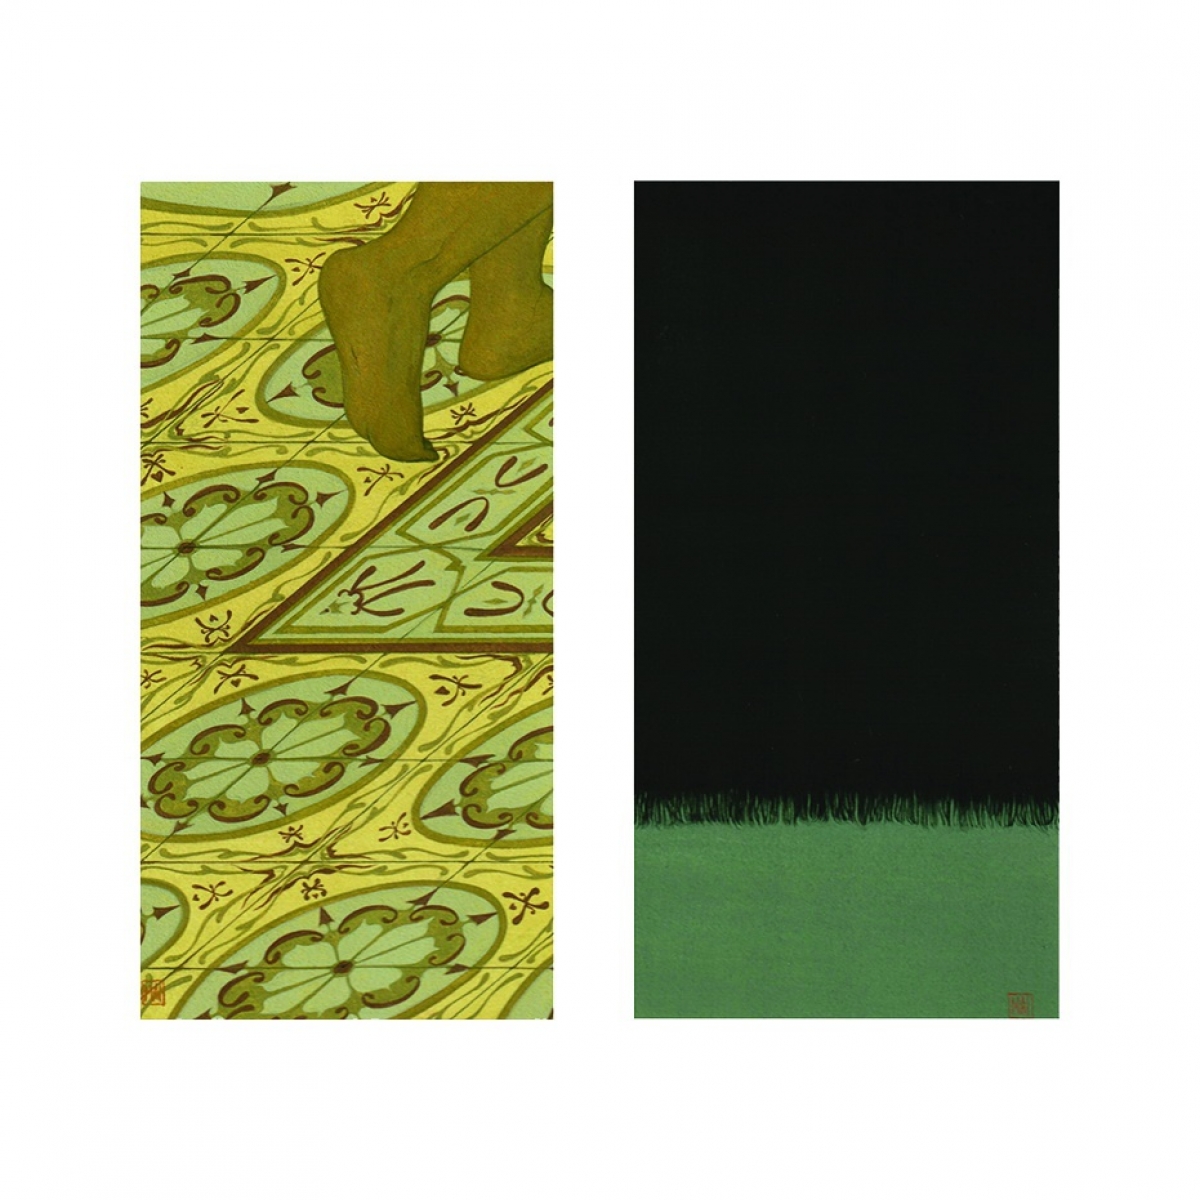 Tác phẩm “Home is where the sun splits my head open” của họa sĩ Mai Tạ. Chất liệu: màu Gouche trên giấy mỹ thuật. Kích thước: 20 x 30.5 cm